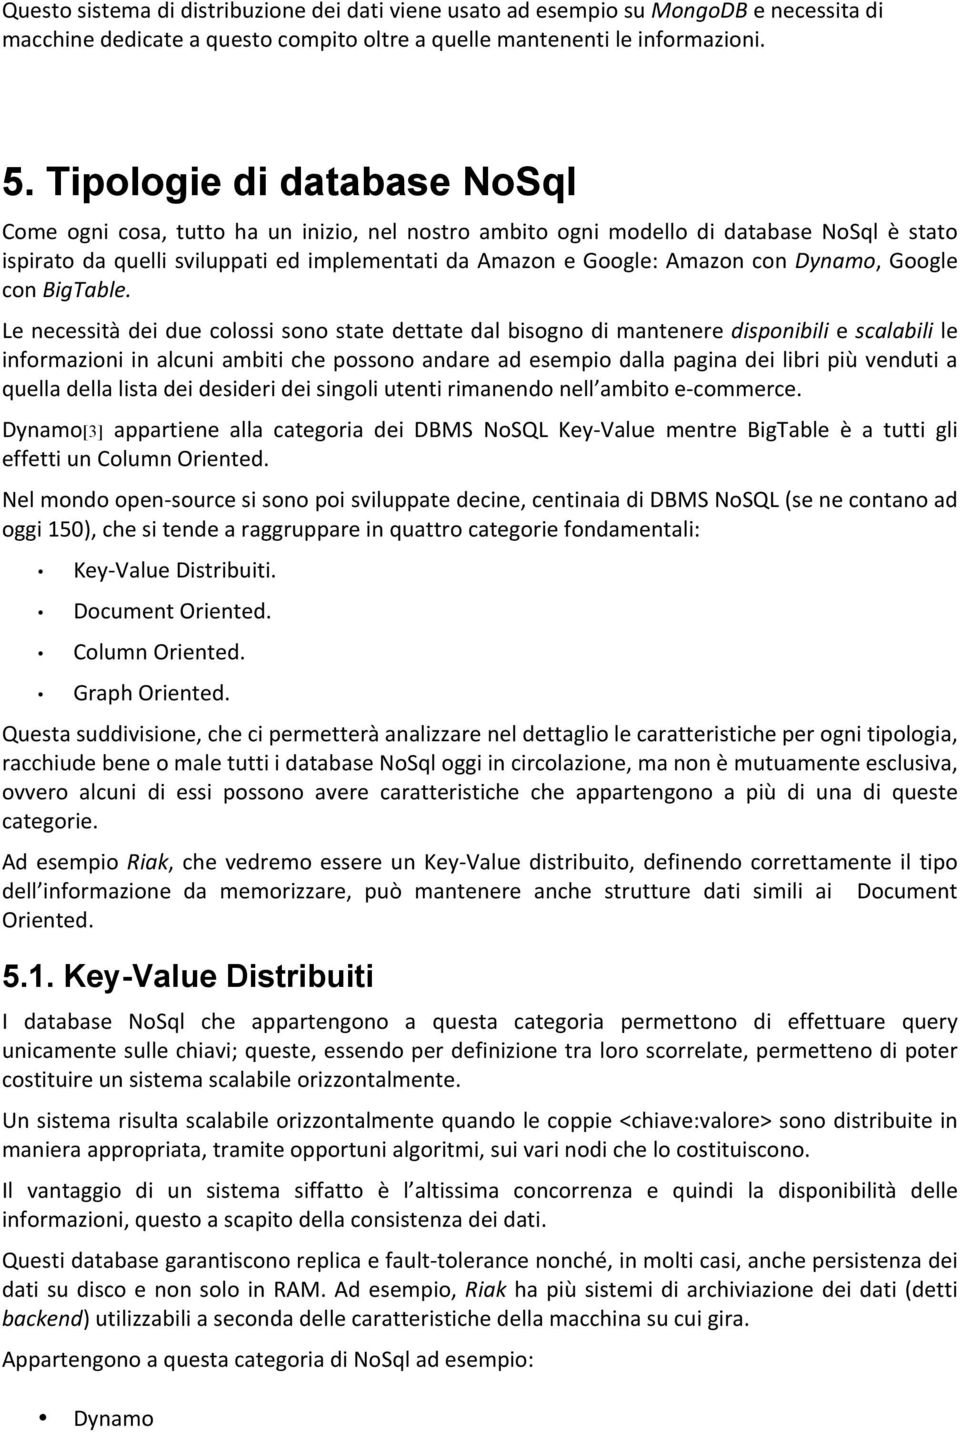 Dynamo, Google con BigTable.